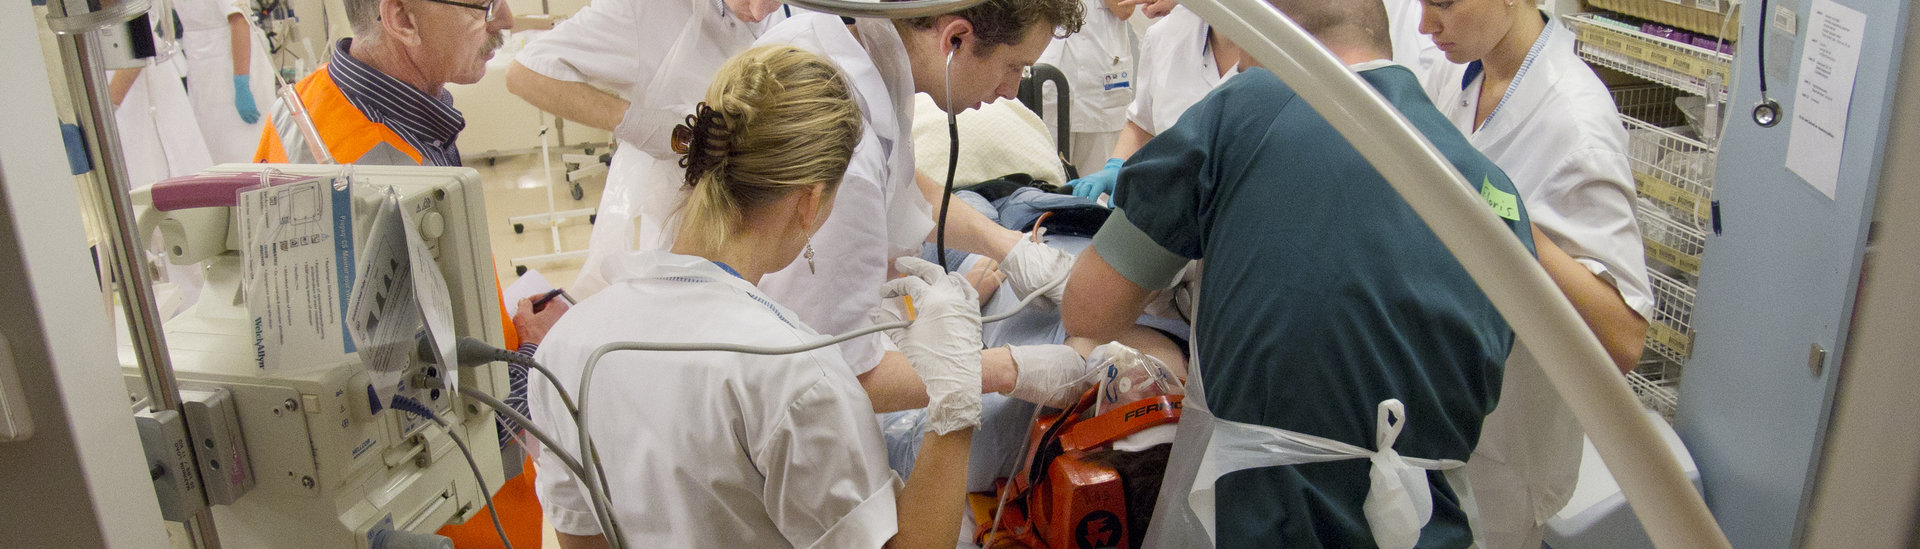 Rampenoefening Calamiteitenhospitaal - Training emergency and trauma hospital